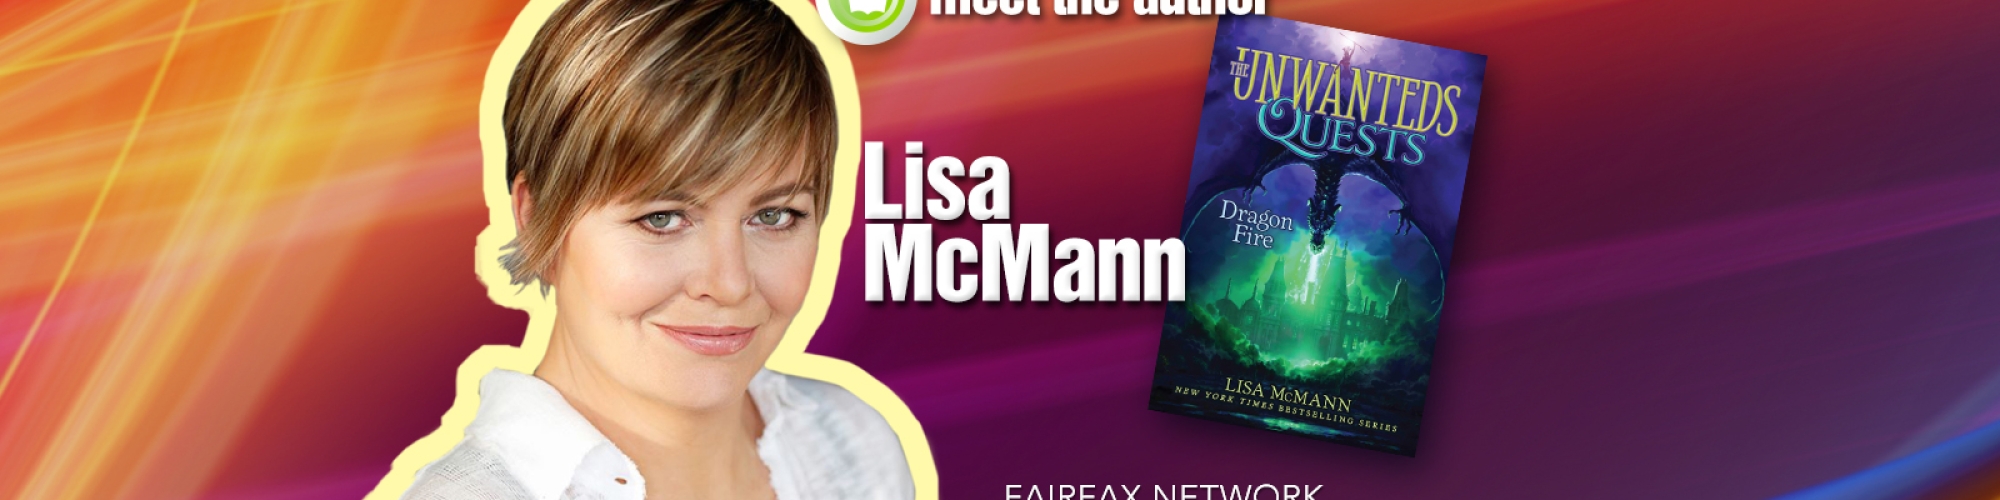 Meet the Author Lisa McMann